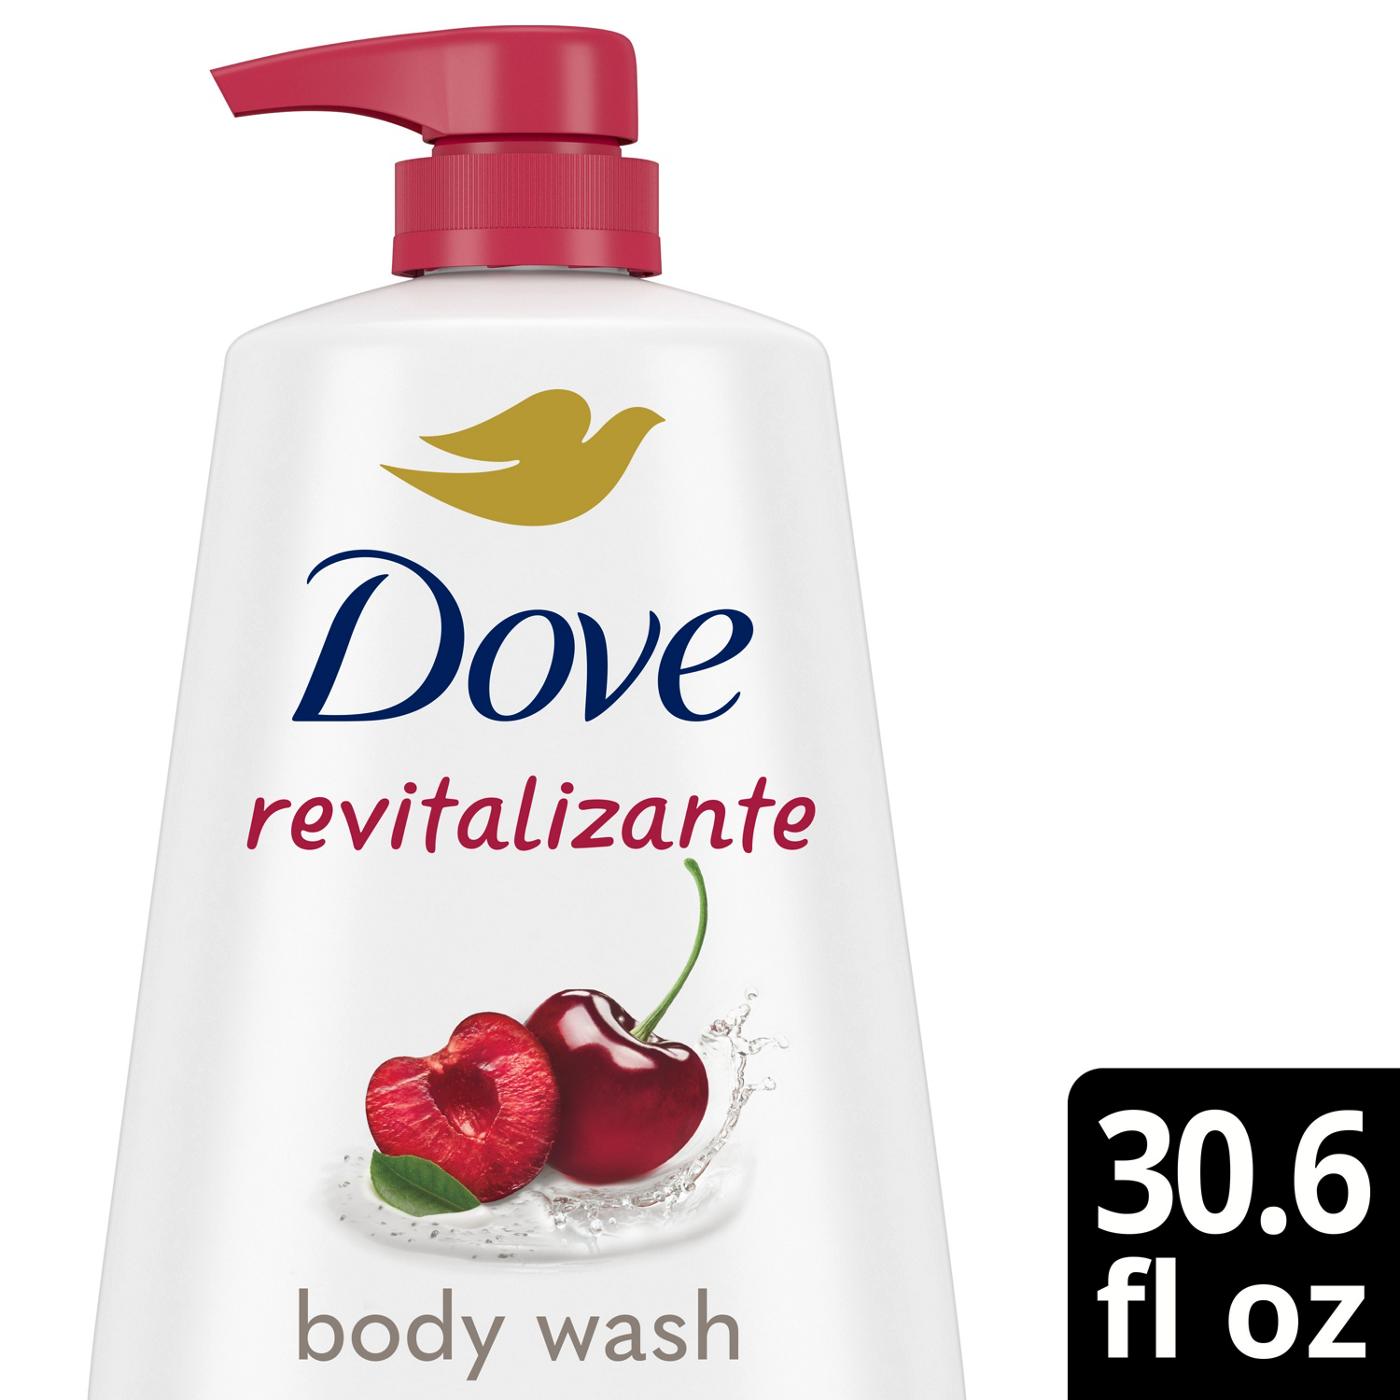 Dove Revitalizante Body Wash - Cherry & Chia Milk; image 2 of 3